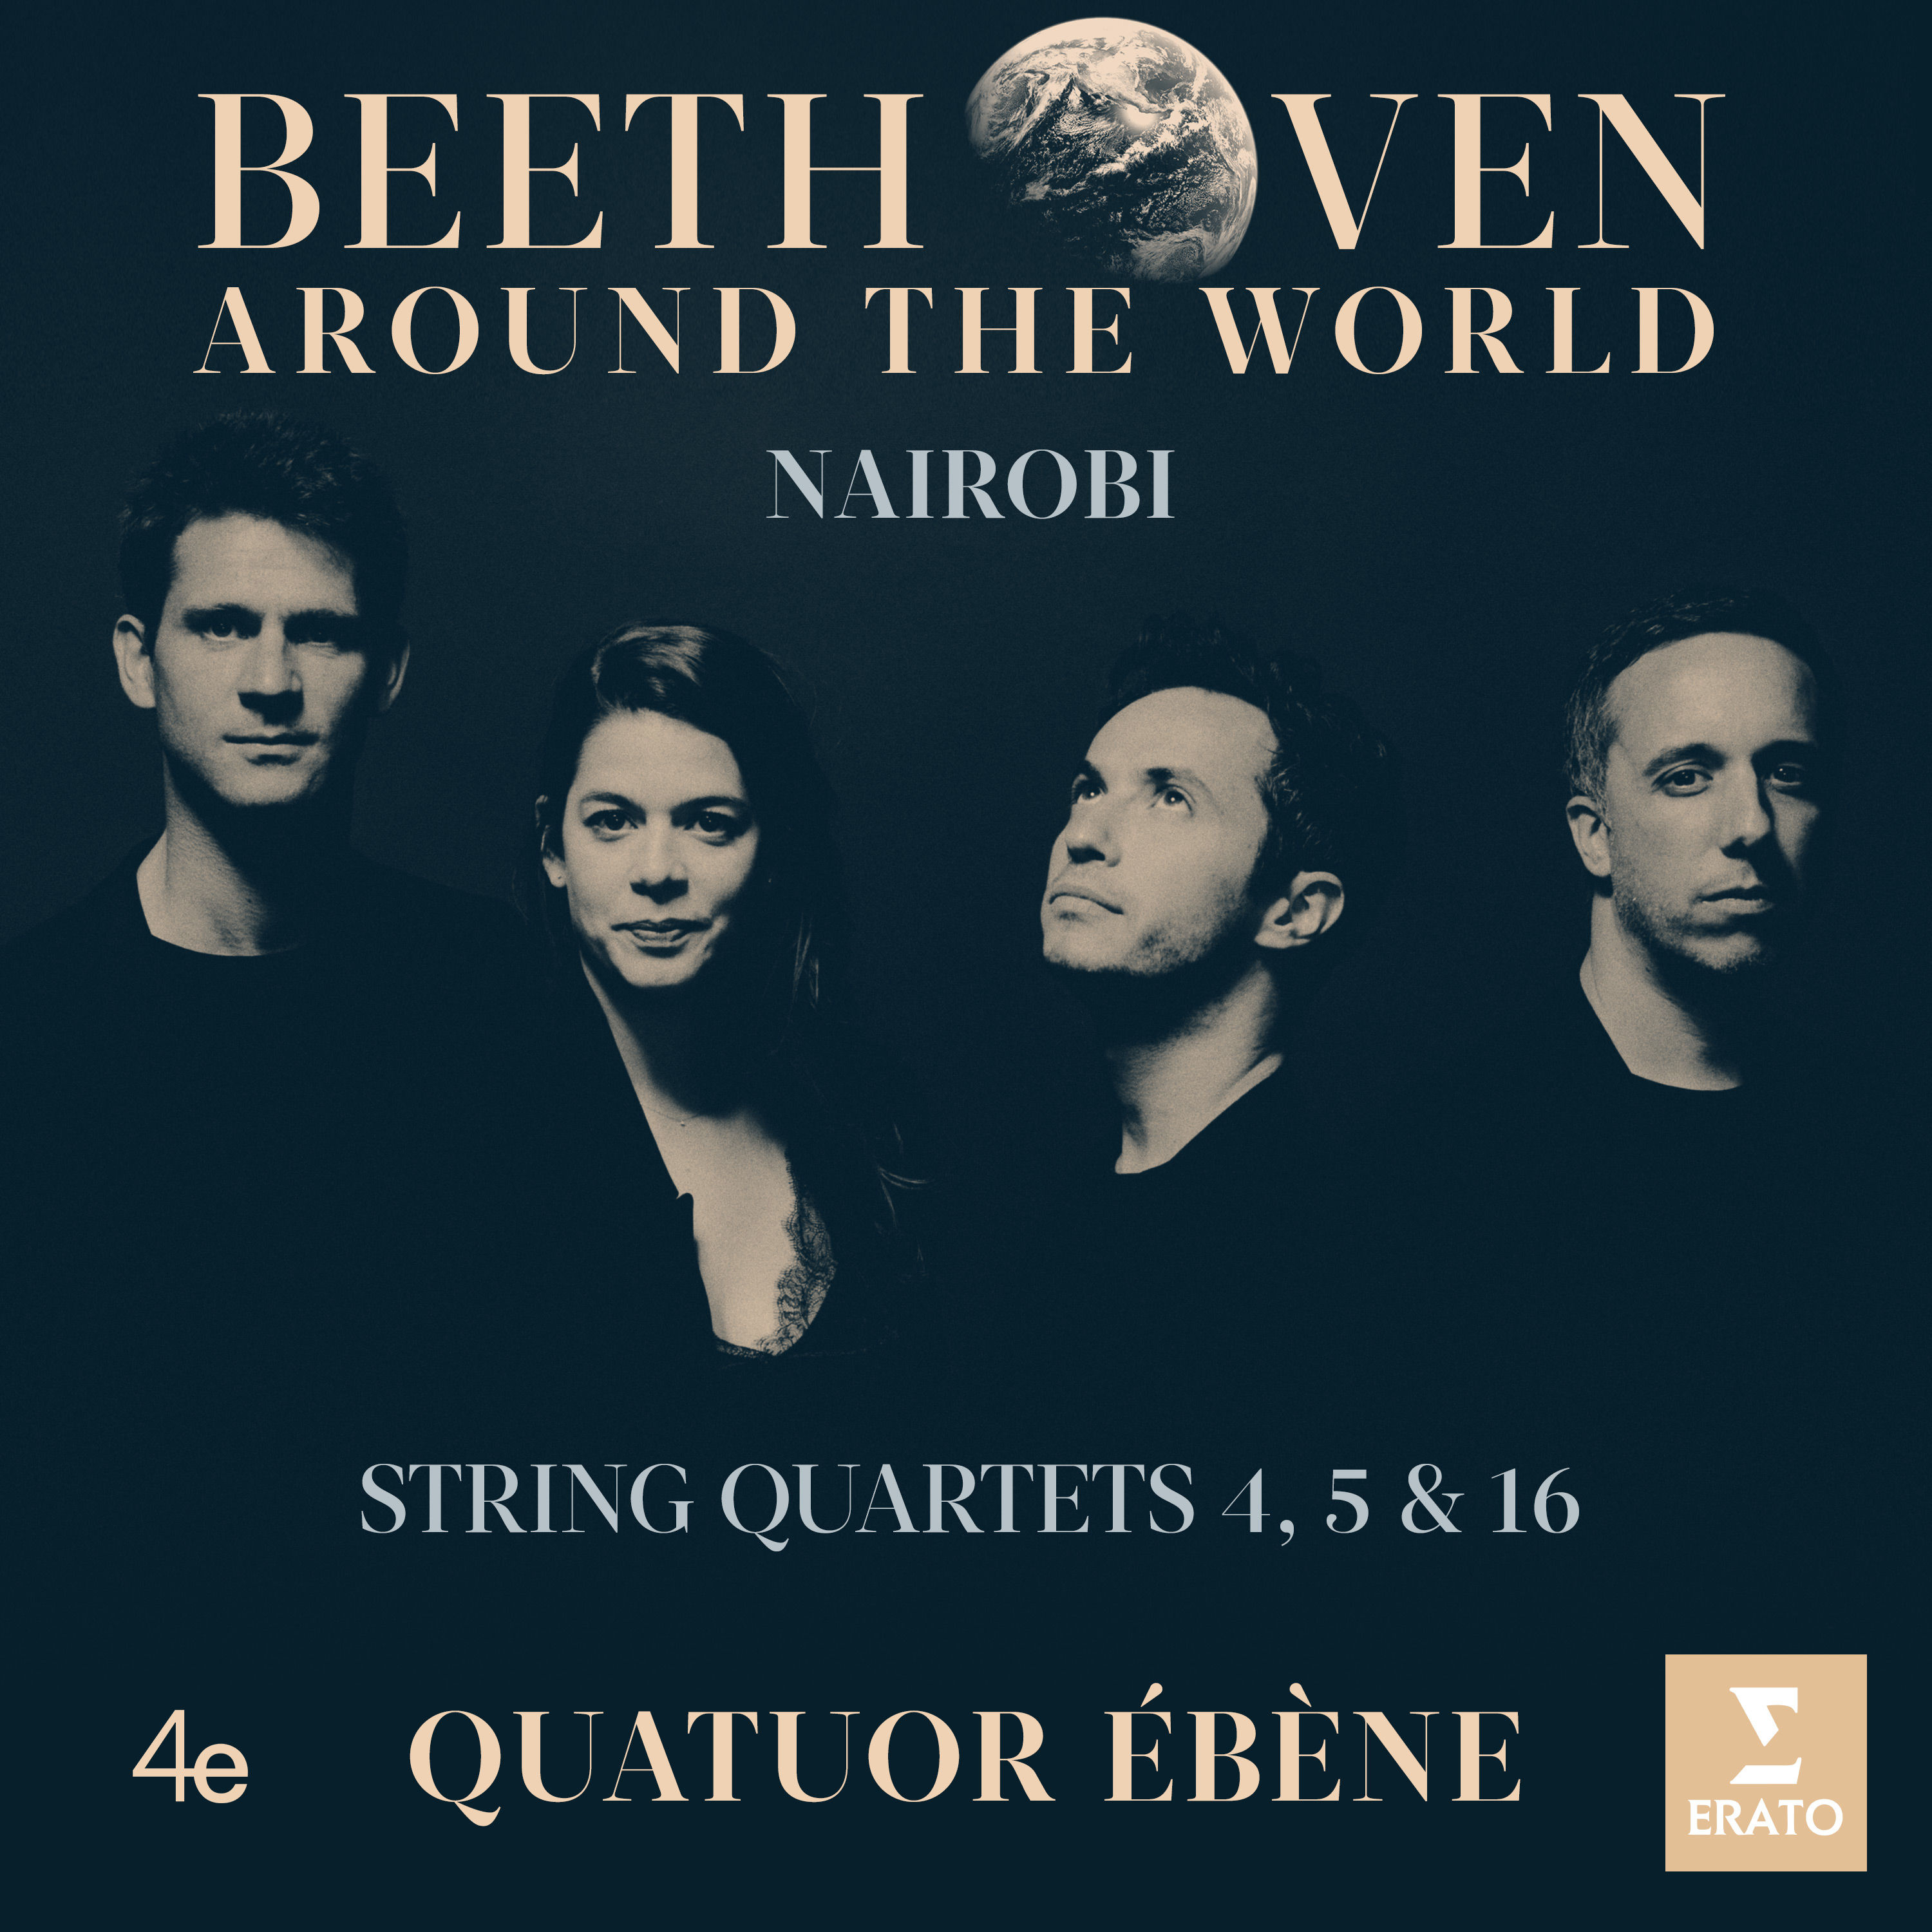 Quatuor Ebene - Beethoven Around the World - Nairobi, String Quartets Nos 4, 5 & 16 (2020) [FLAC 24bit/96kHz]